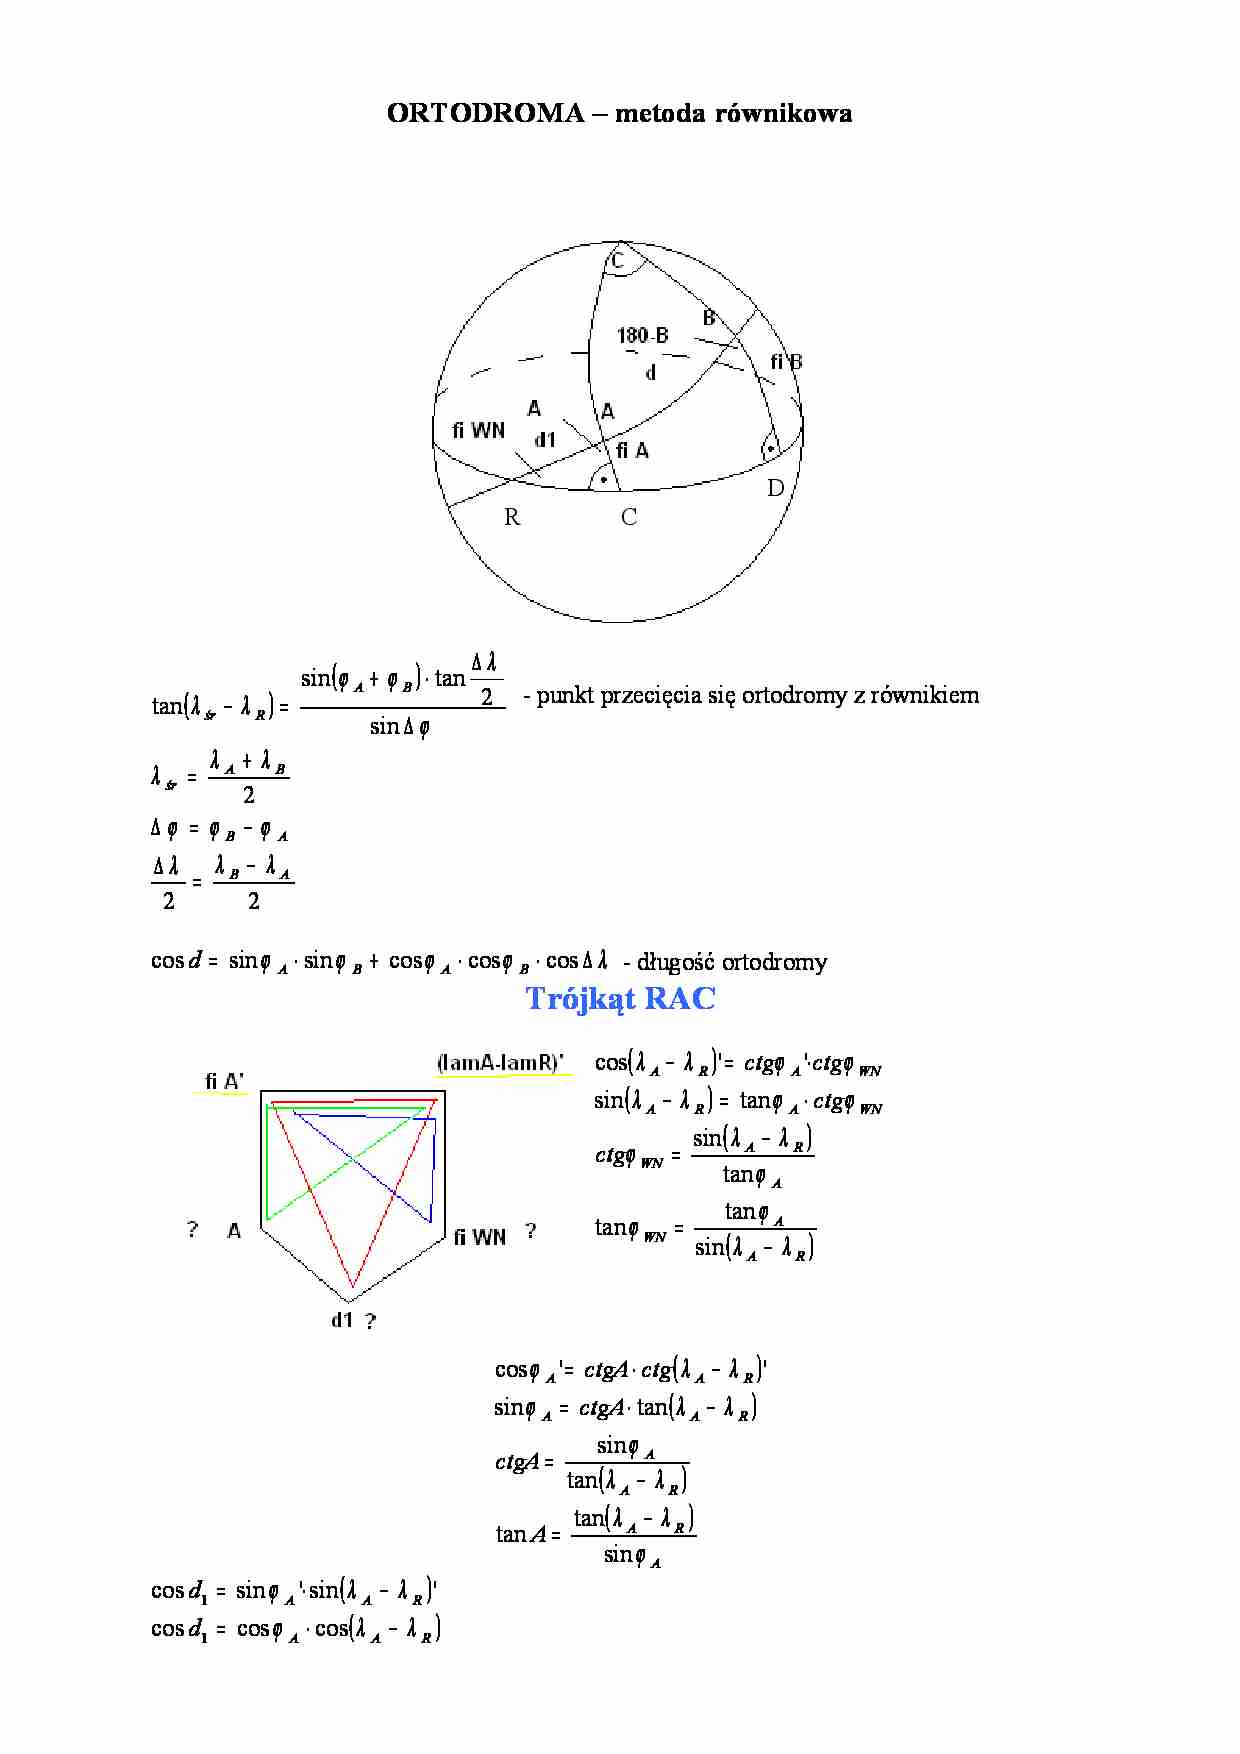 ORTODROMA - metoda równikowa - Funkcje trygonometryczne - strona 1